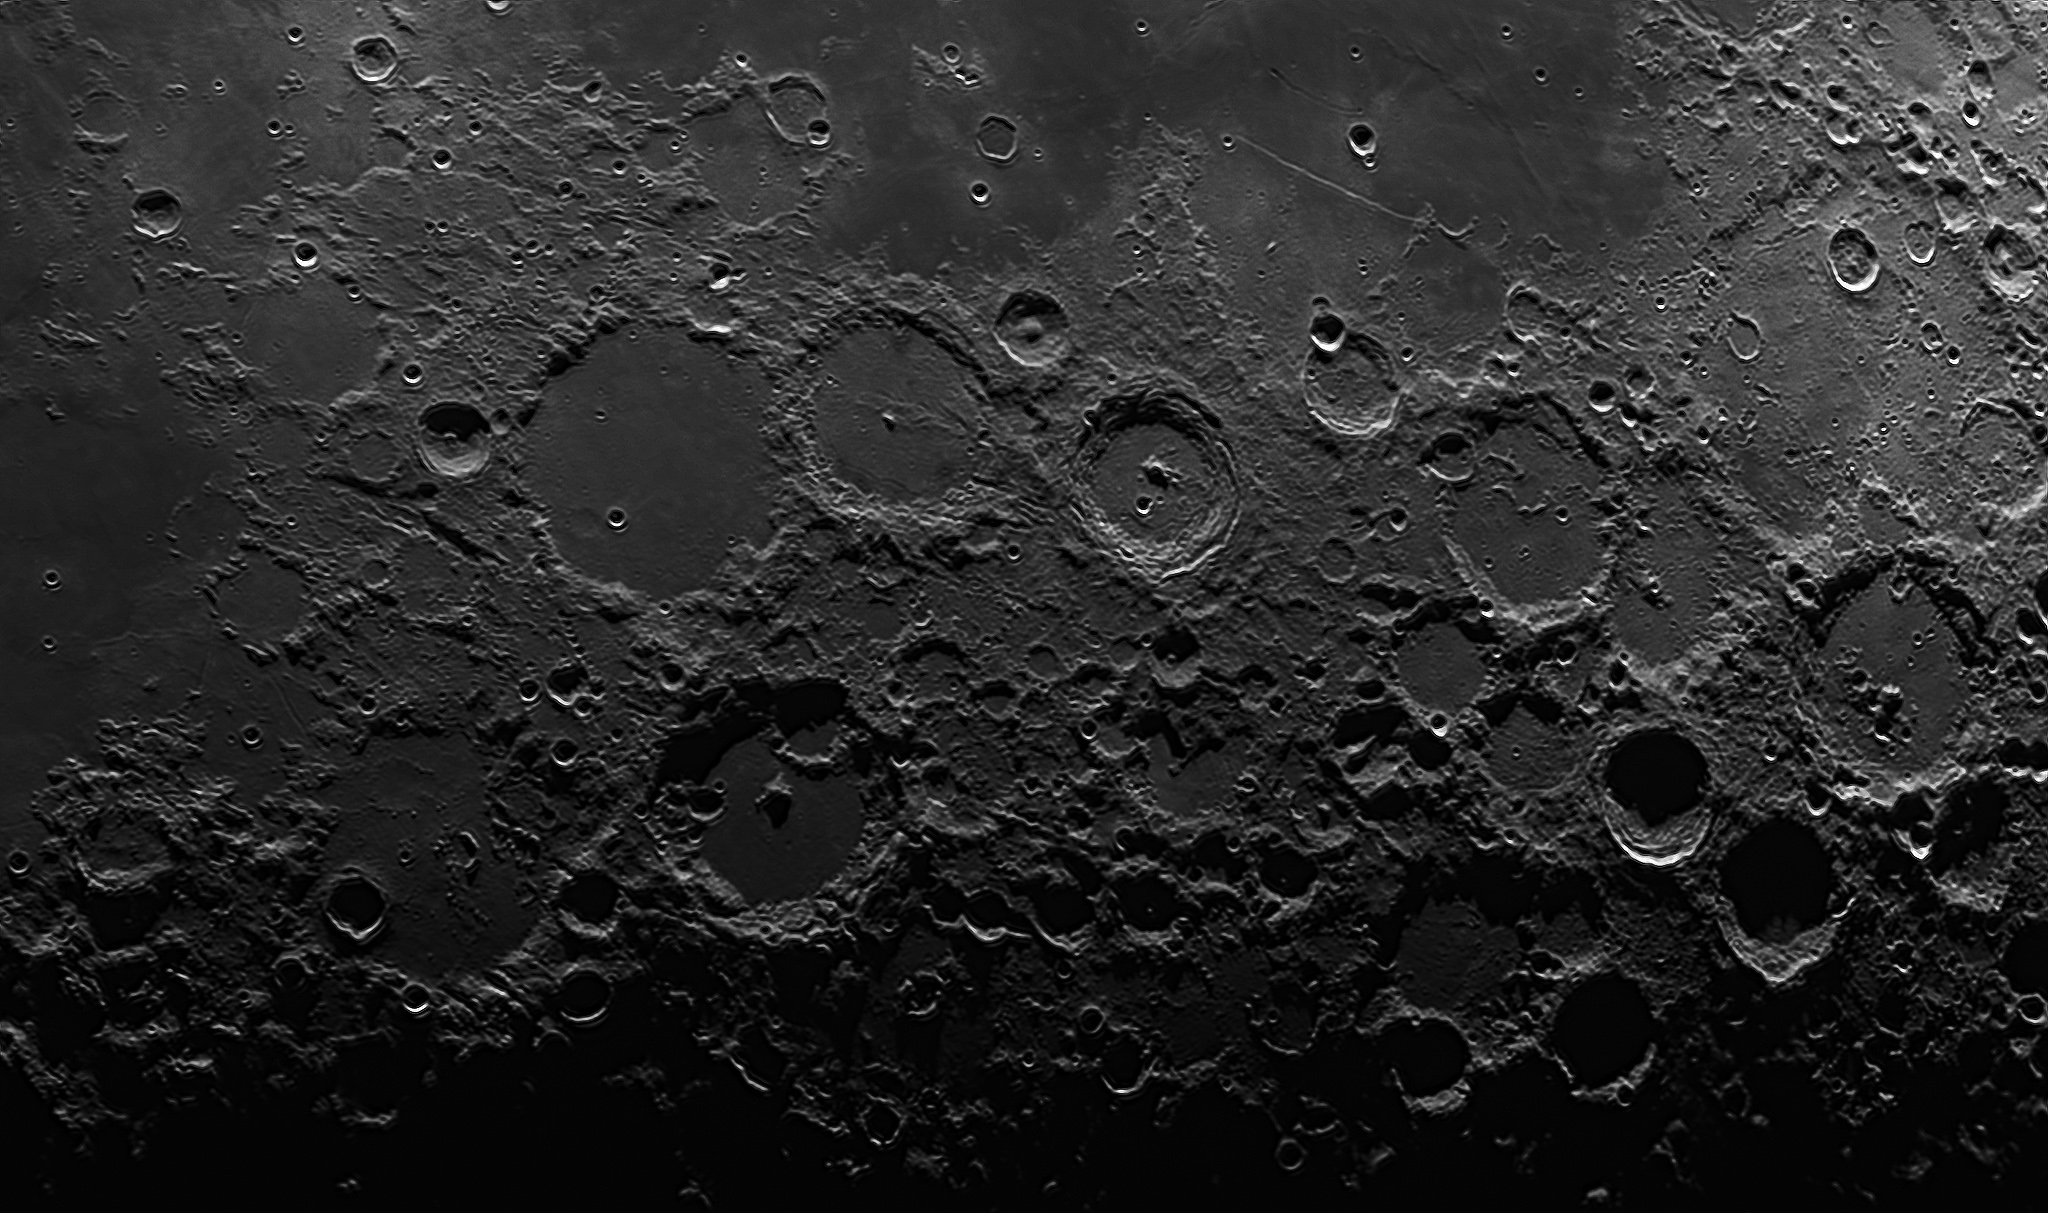 Regione cratere Ptolemaeus...